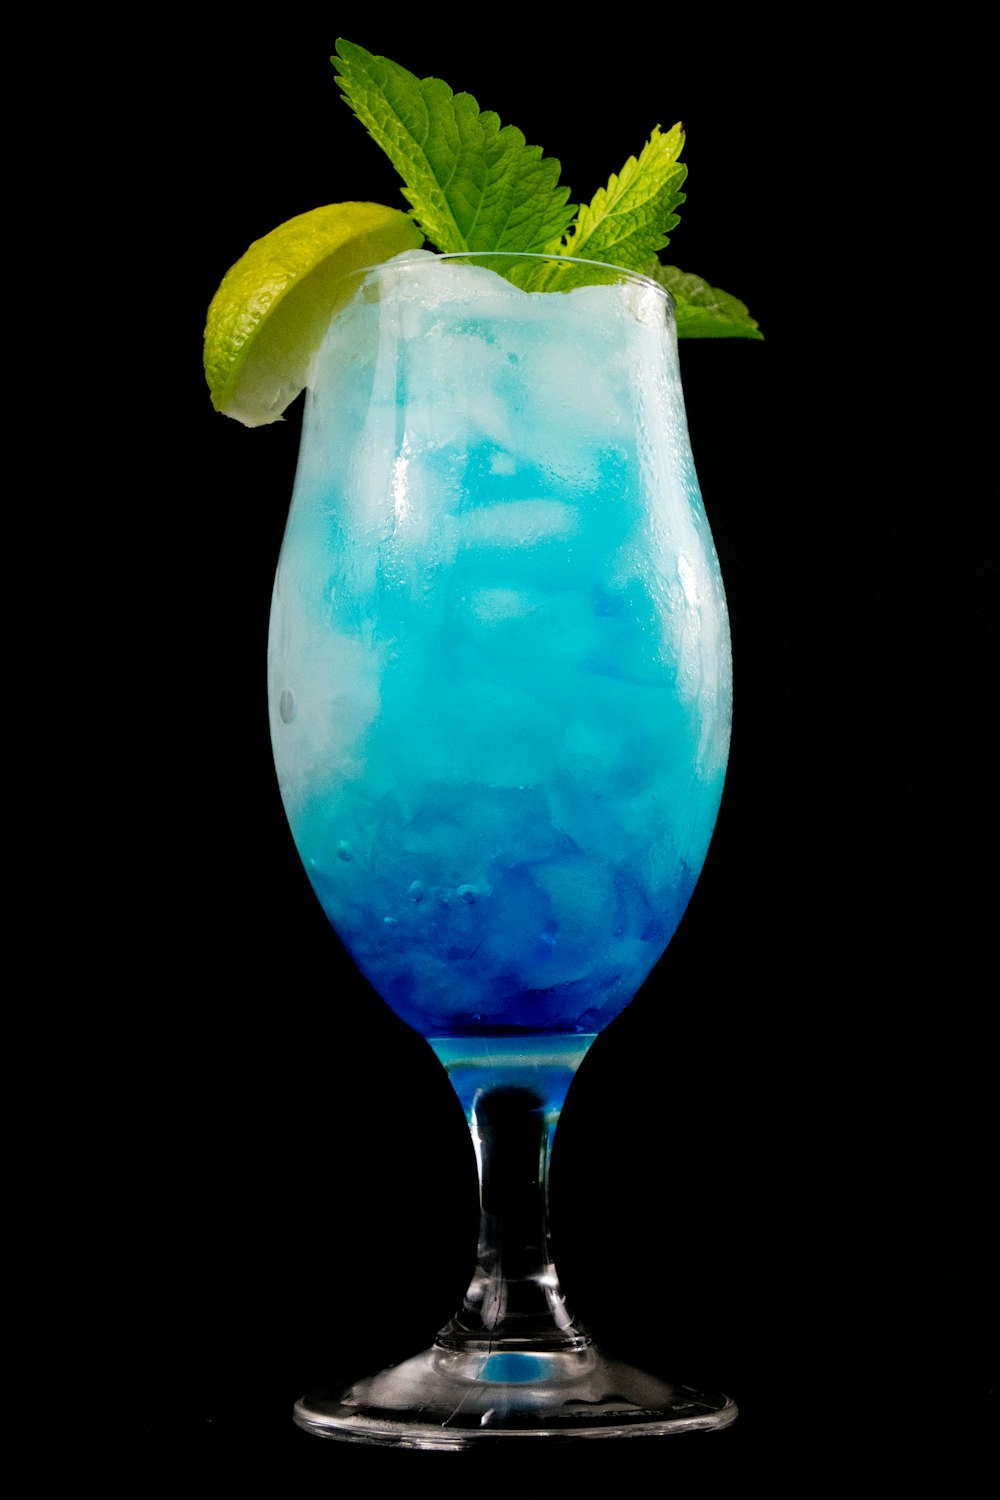 Líquido azul en vaso transparente con rodajas de limón